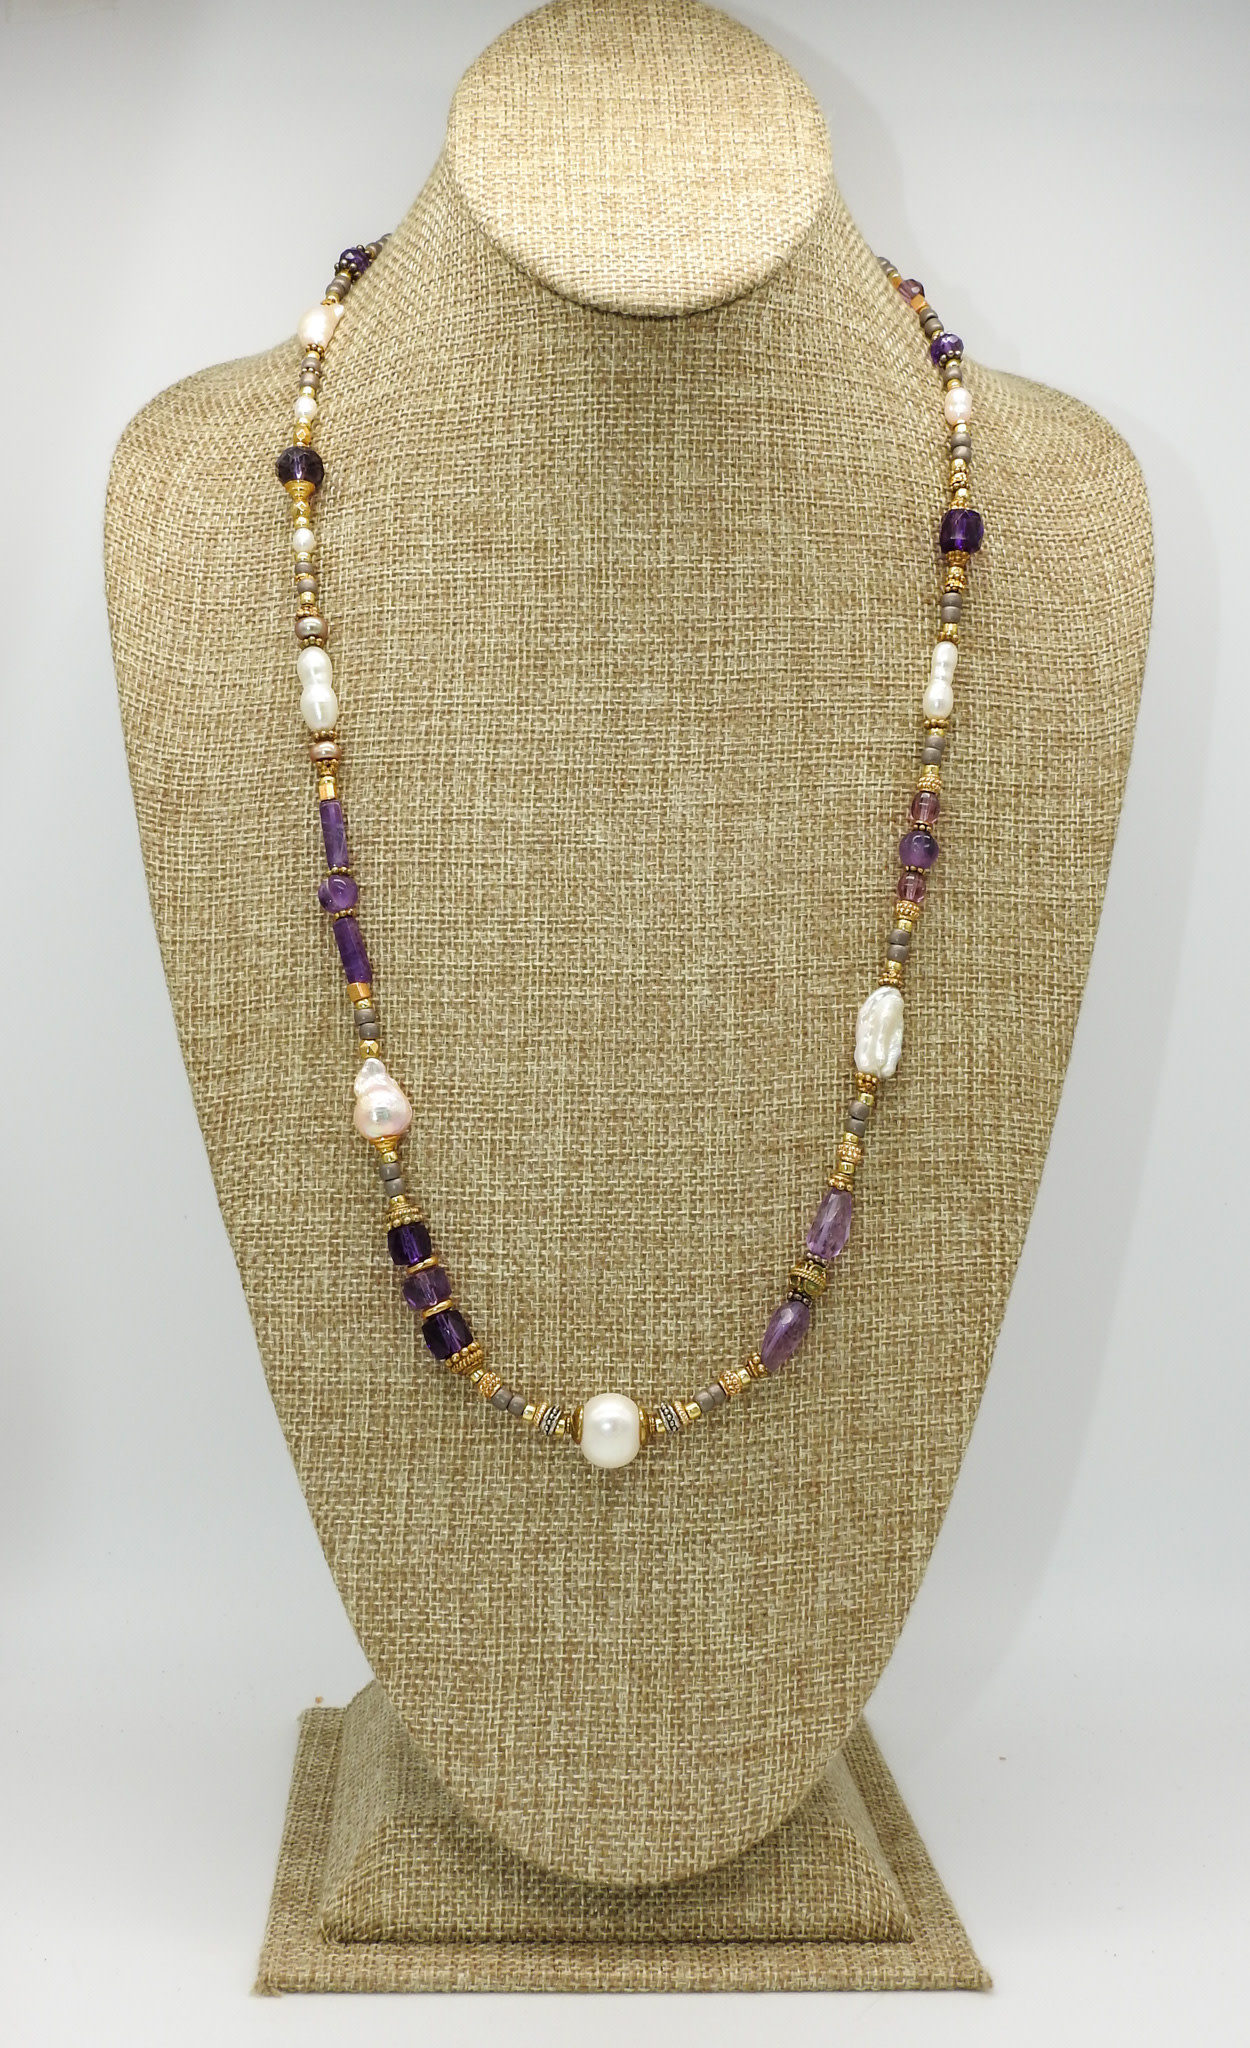 Das DAS-24 Amy, Jap Prls, Silver & GF, GV Beads Necklace